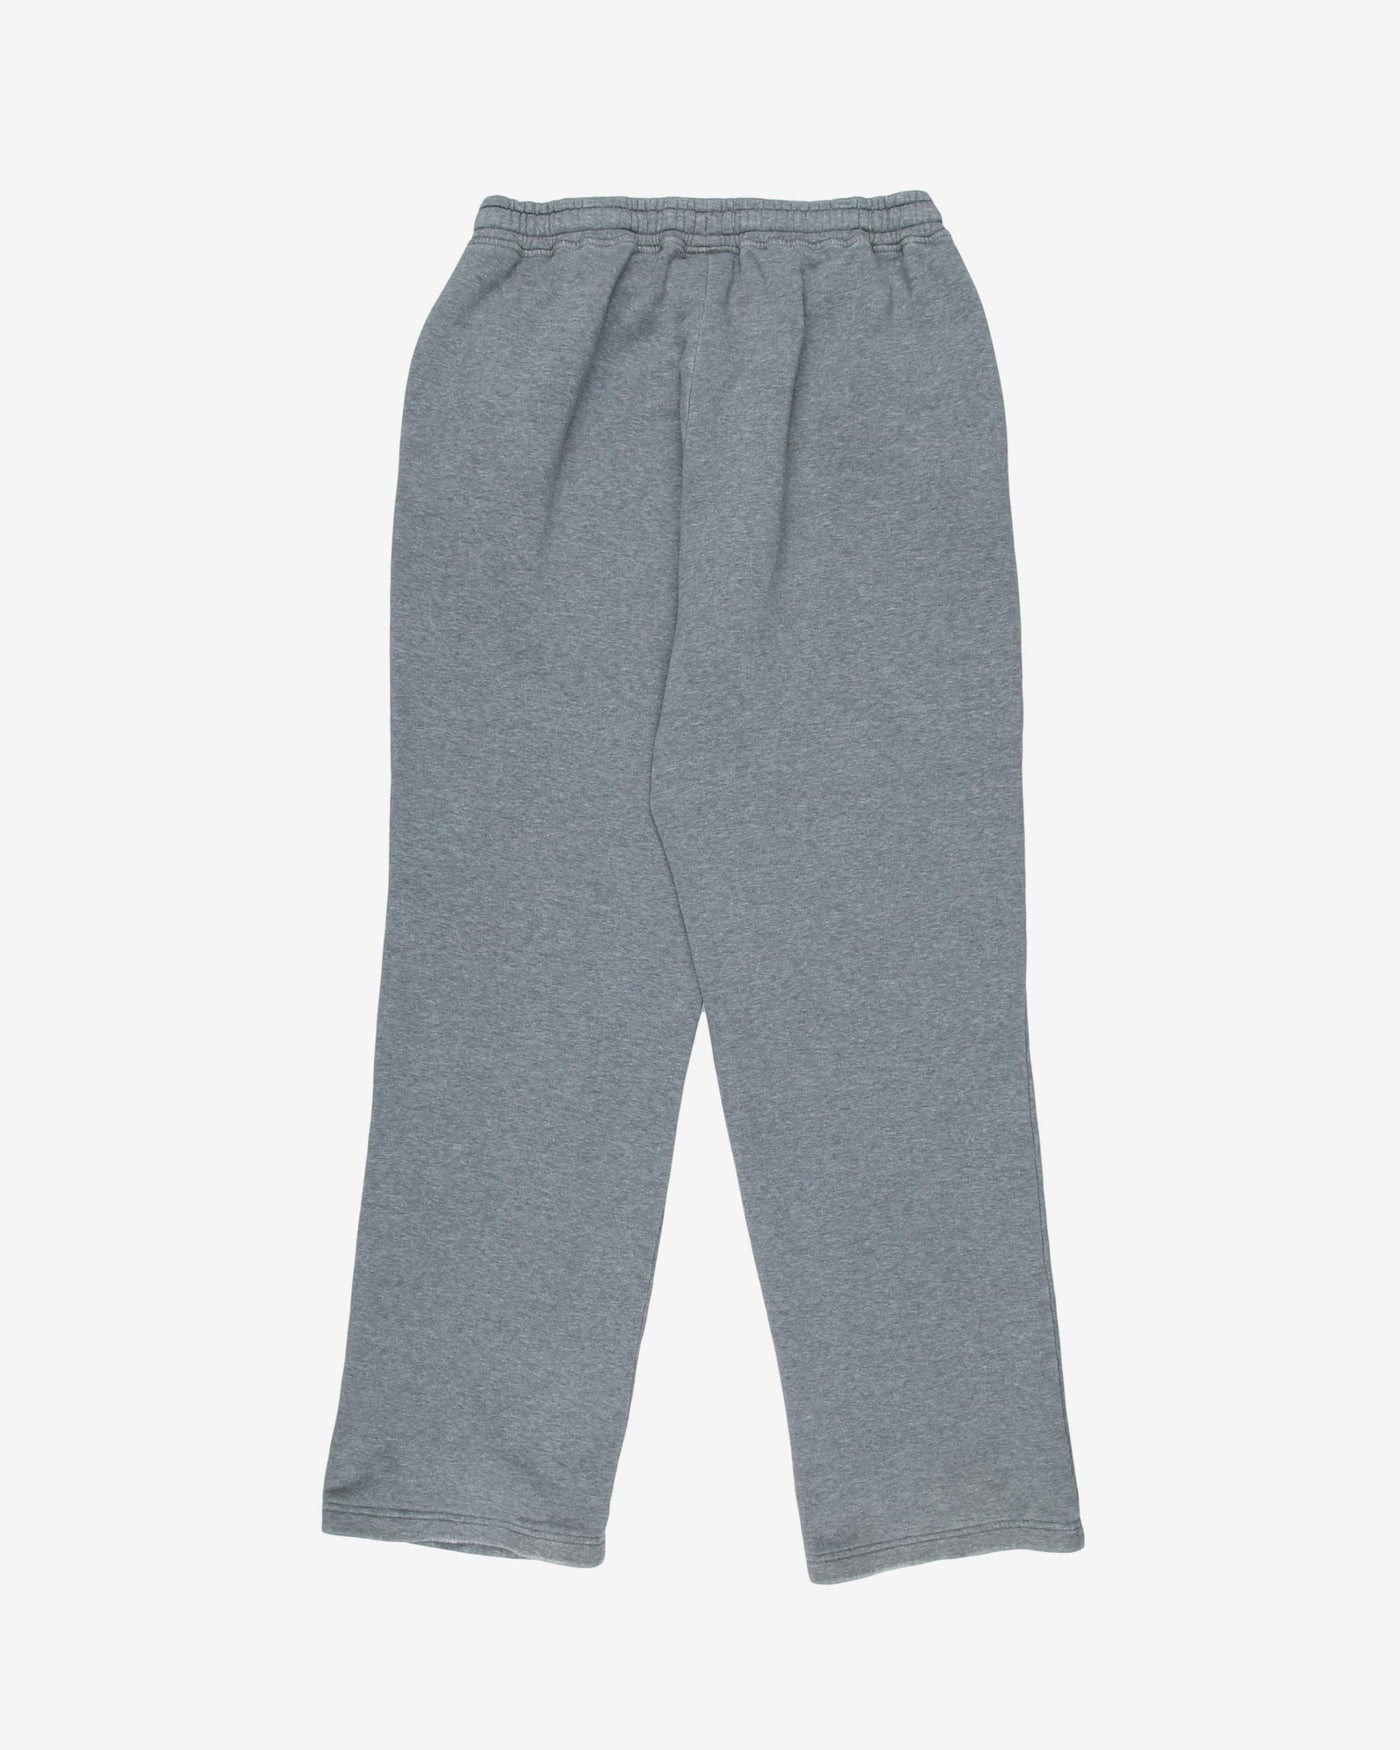 puma grey sweat trousers - w26